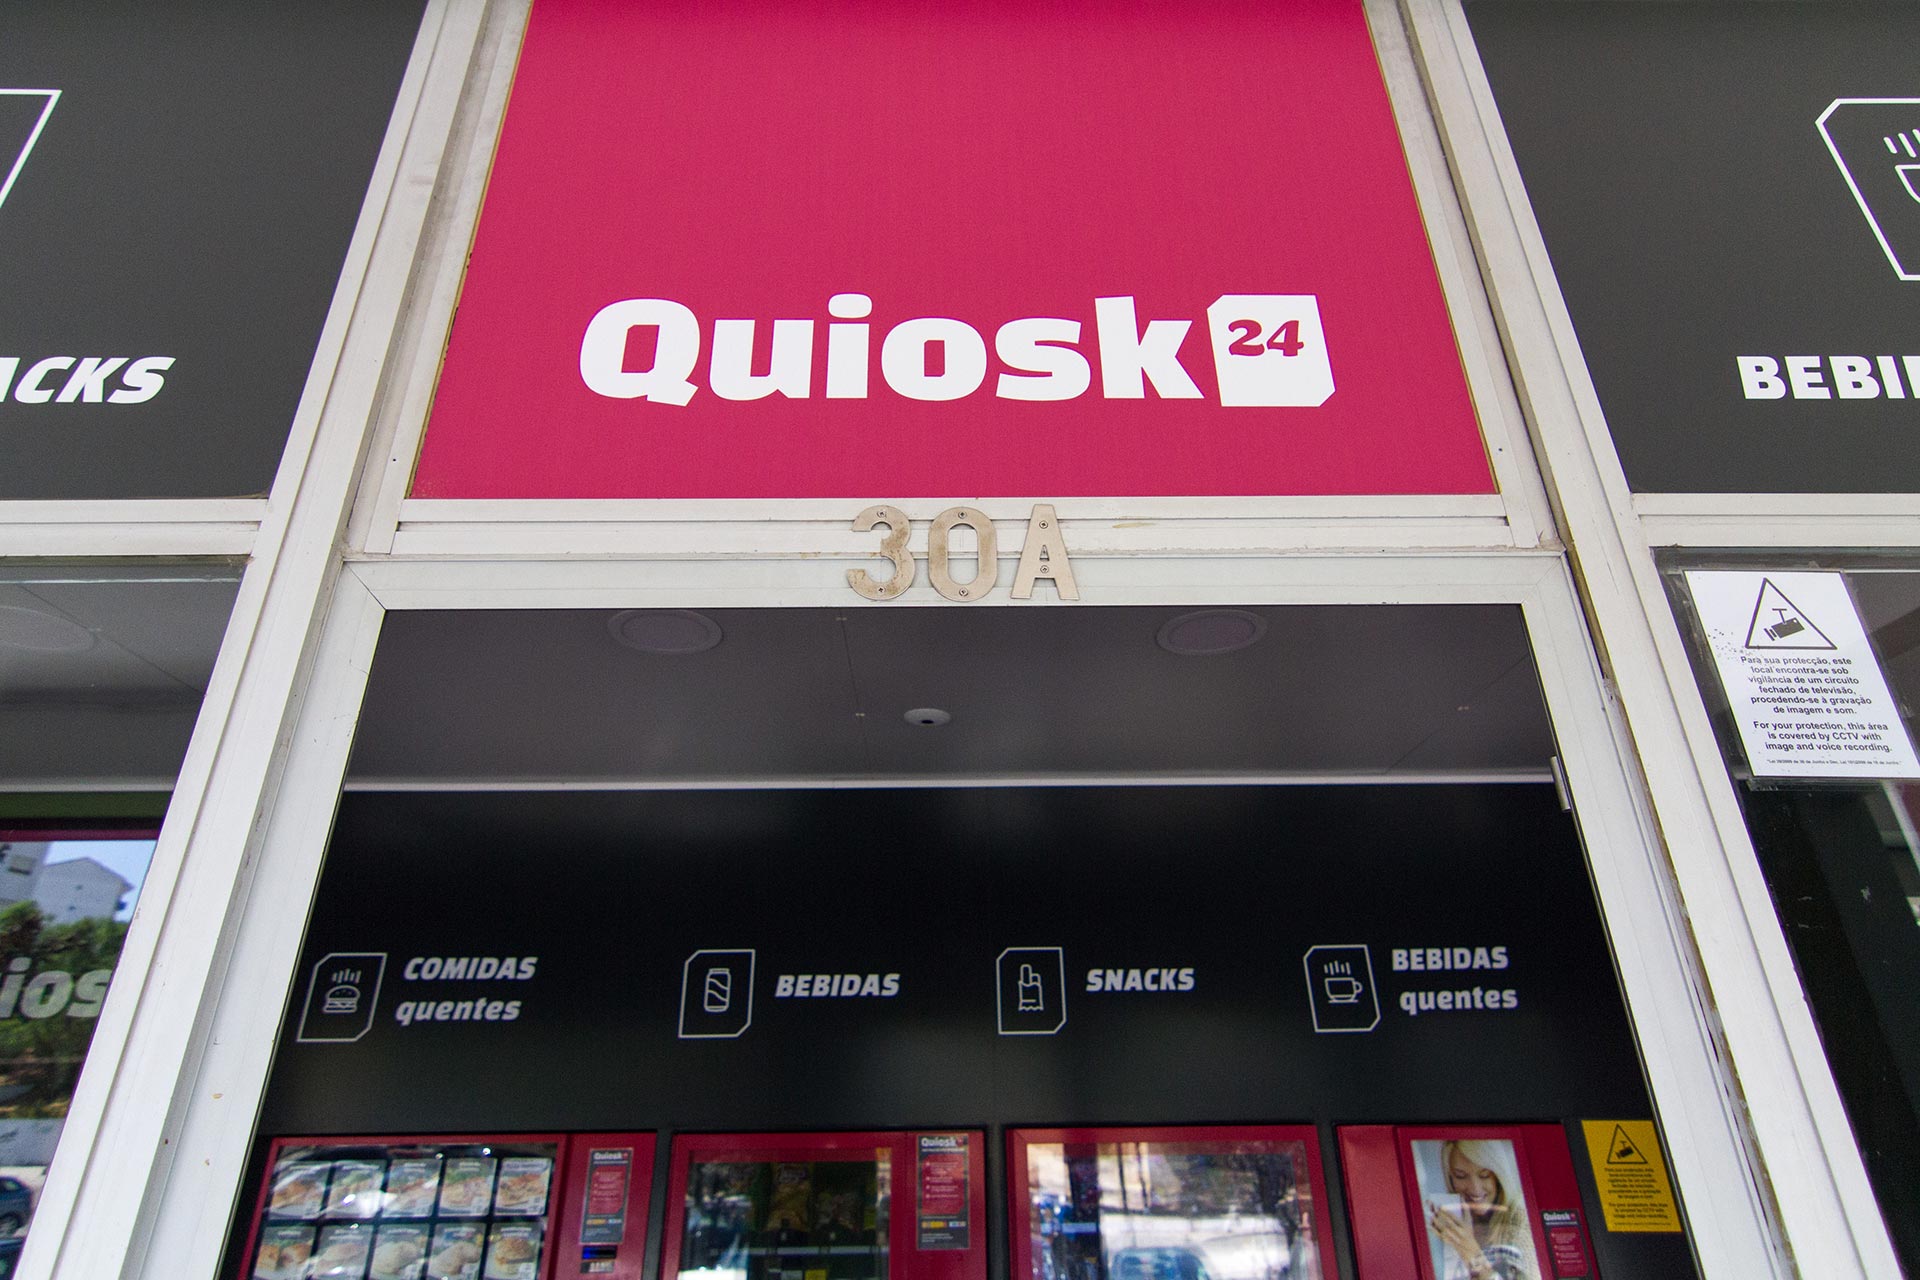 Quiosk24 vending machines store entrance